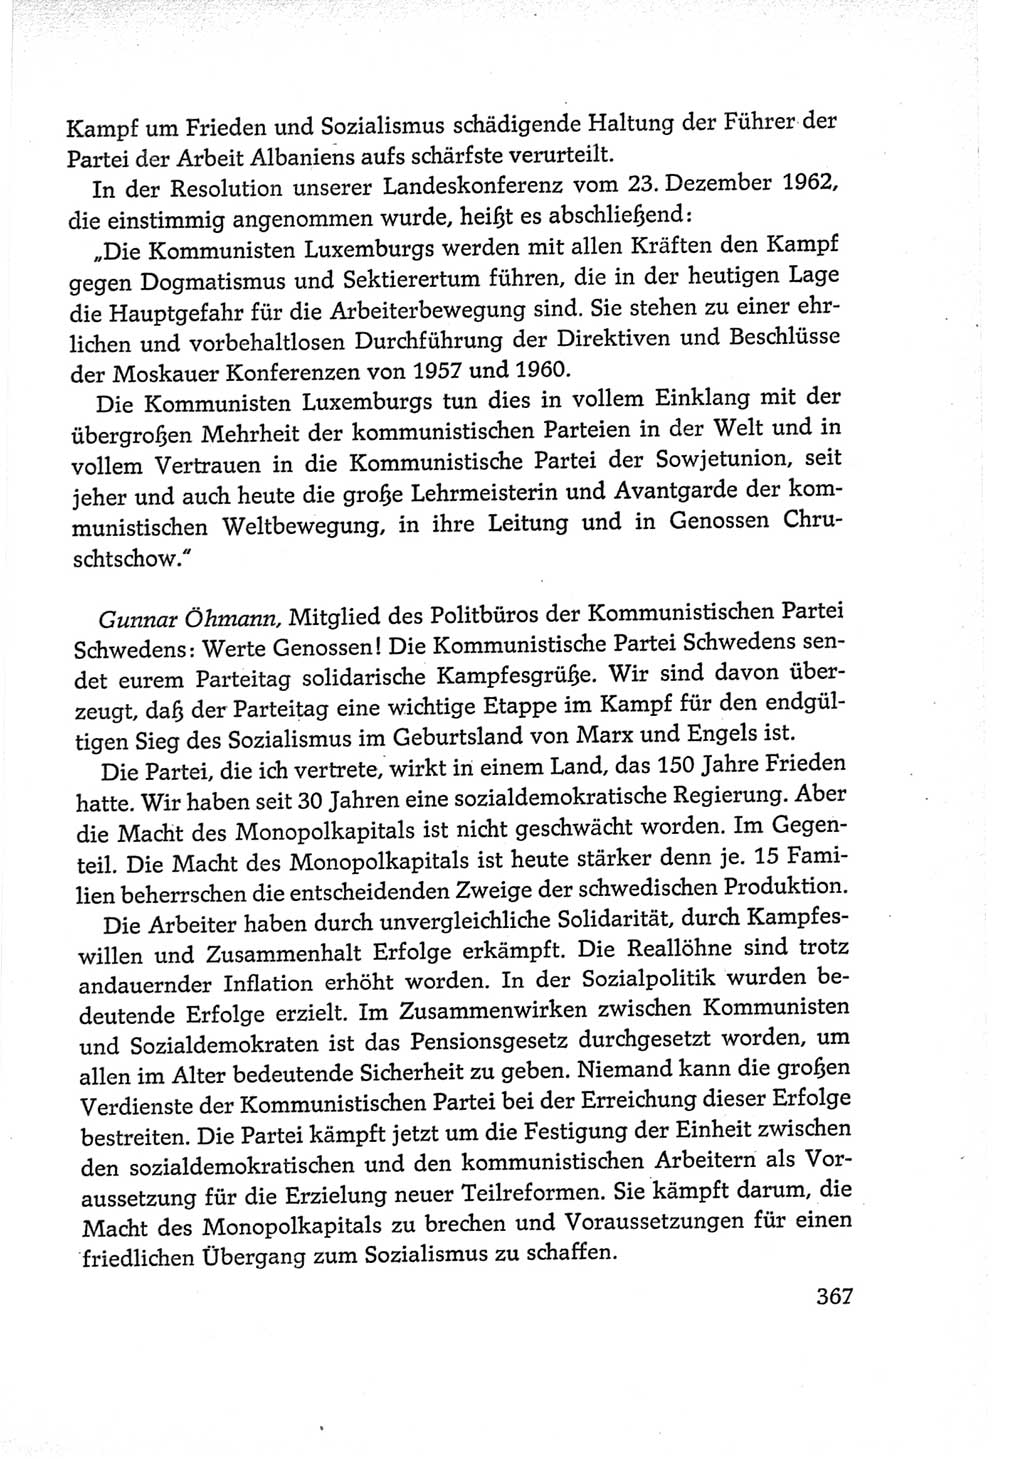 Protokoll der Verhandlungen des Ⅵ. Parteitages der Sozialistischen Einheitspartei Deutschlands (SED) [Deutsche Demokratische Republik (DDR)] 1963, Band Ⅱ, Seite 367 (Prot. Verh. Ⅵ. PT SED DDR 1963, Bd. Ⅱ, S. 367)